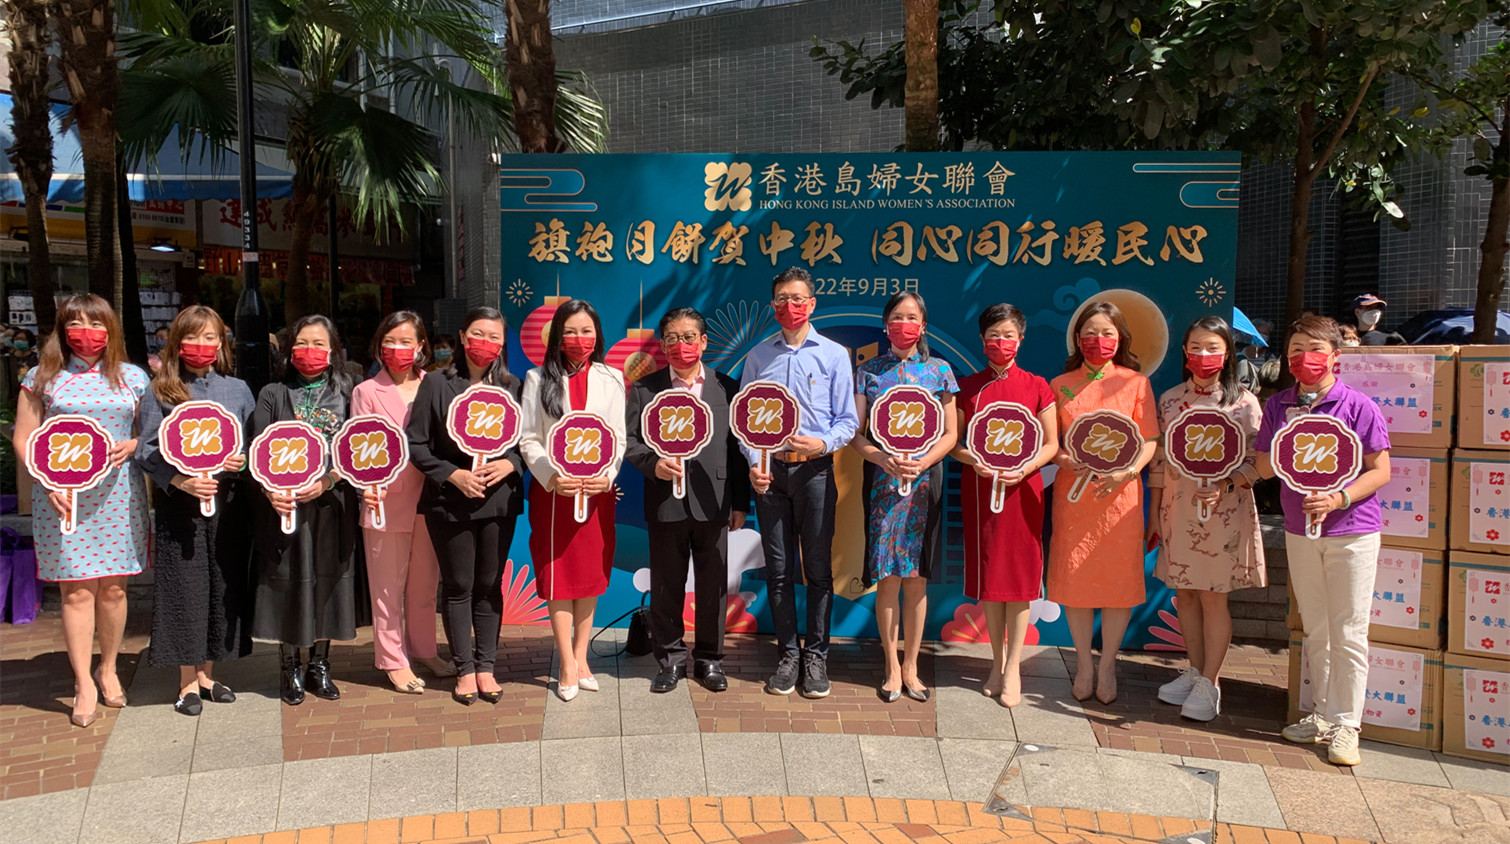 香港島婦女聯會舉辦「旗袍月餅賀中秋 同心同行暖民心」活動